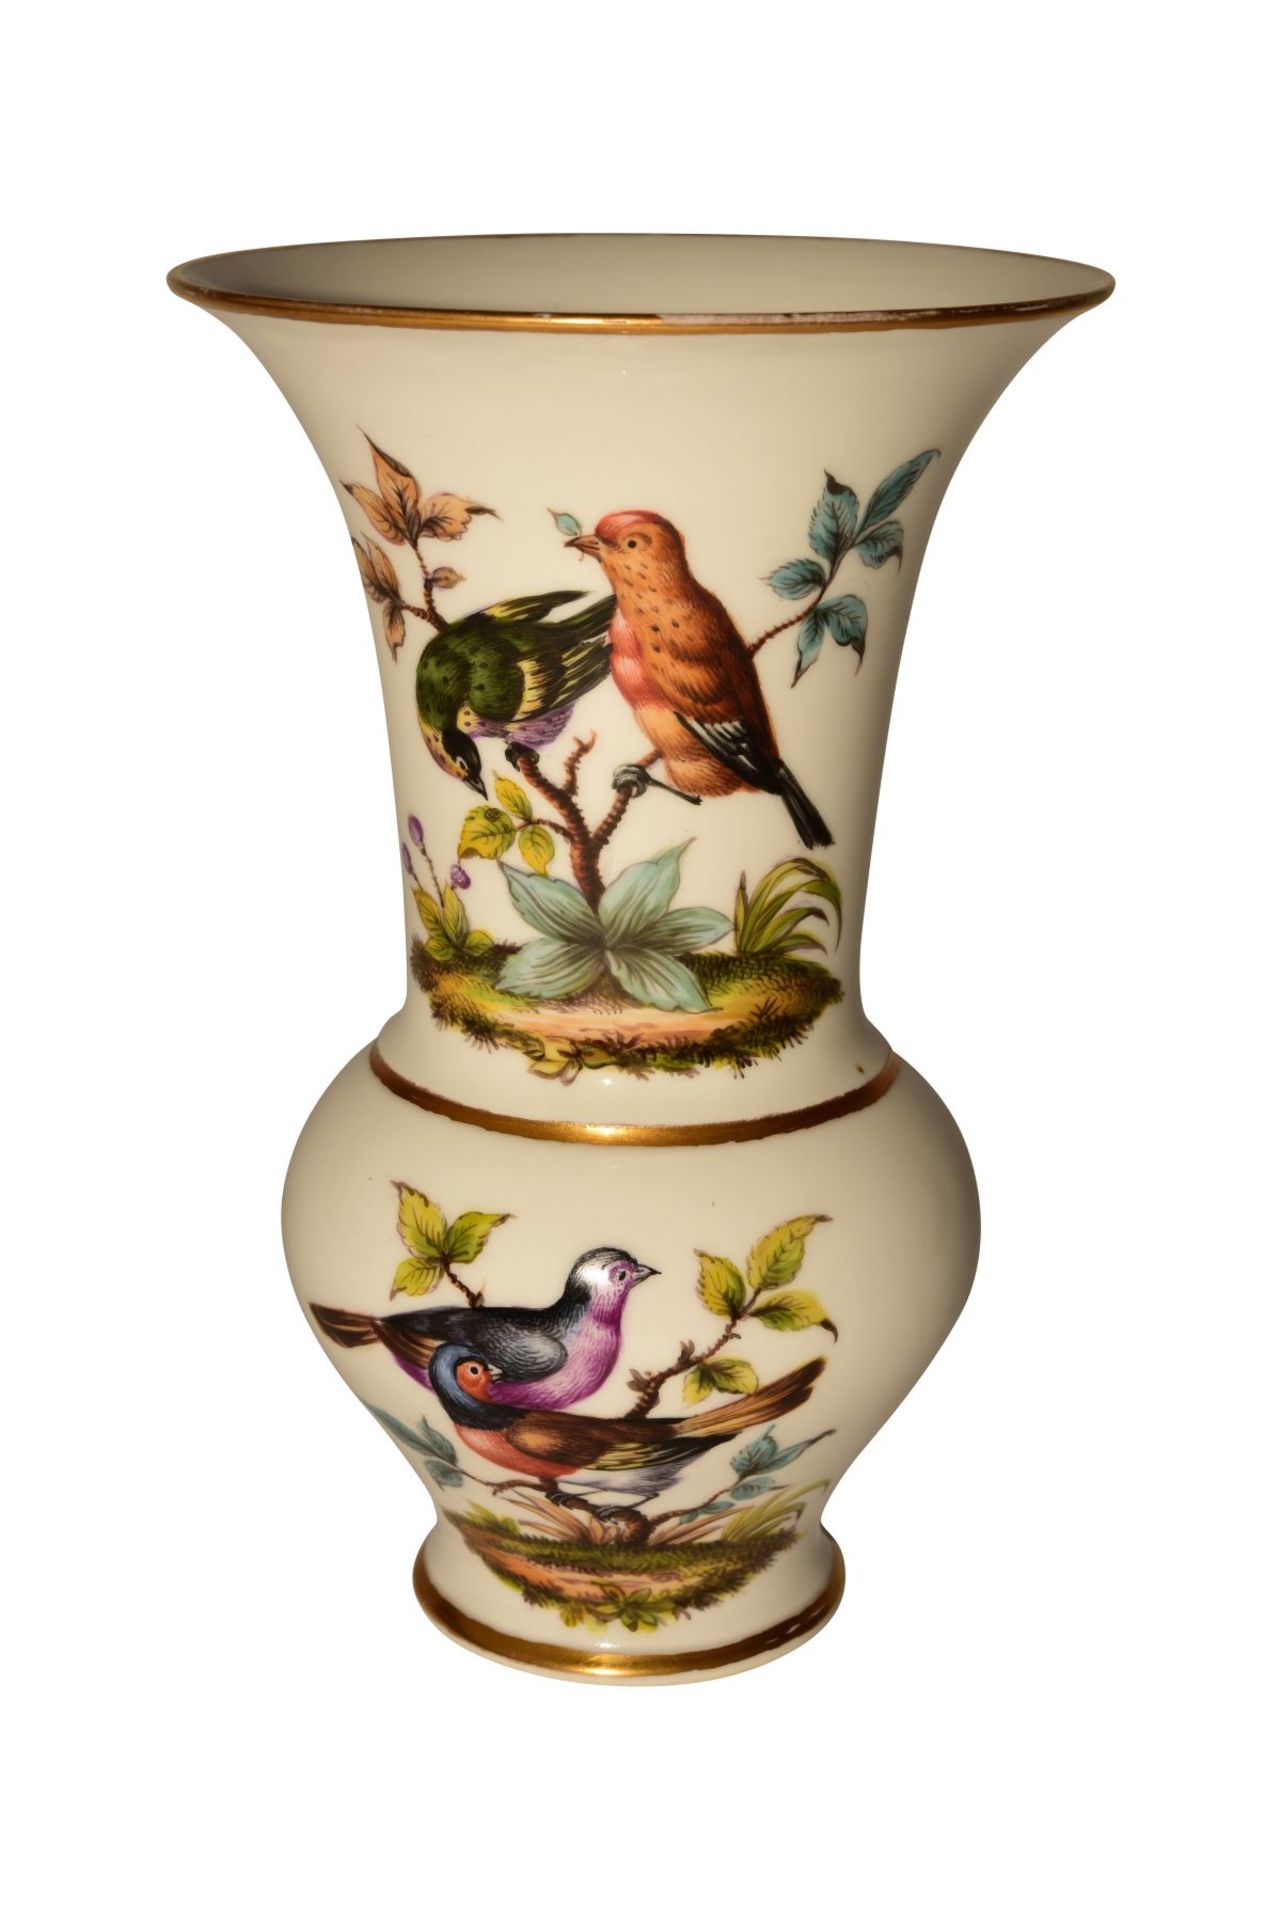 5 rare Augustus Rex vases Dresden 19th century - Image 3 of 10